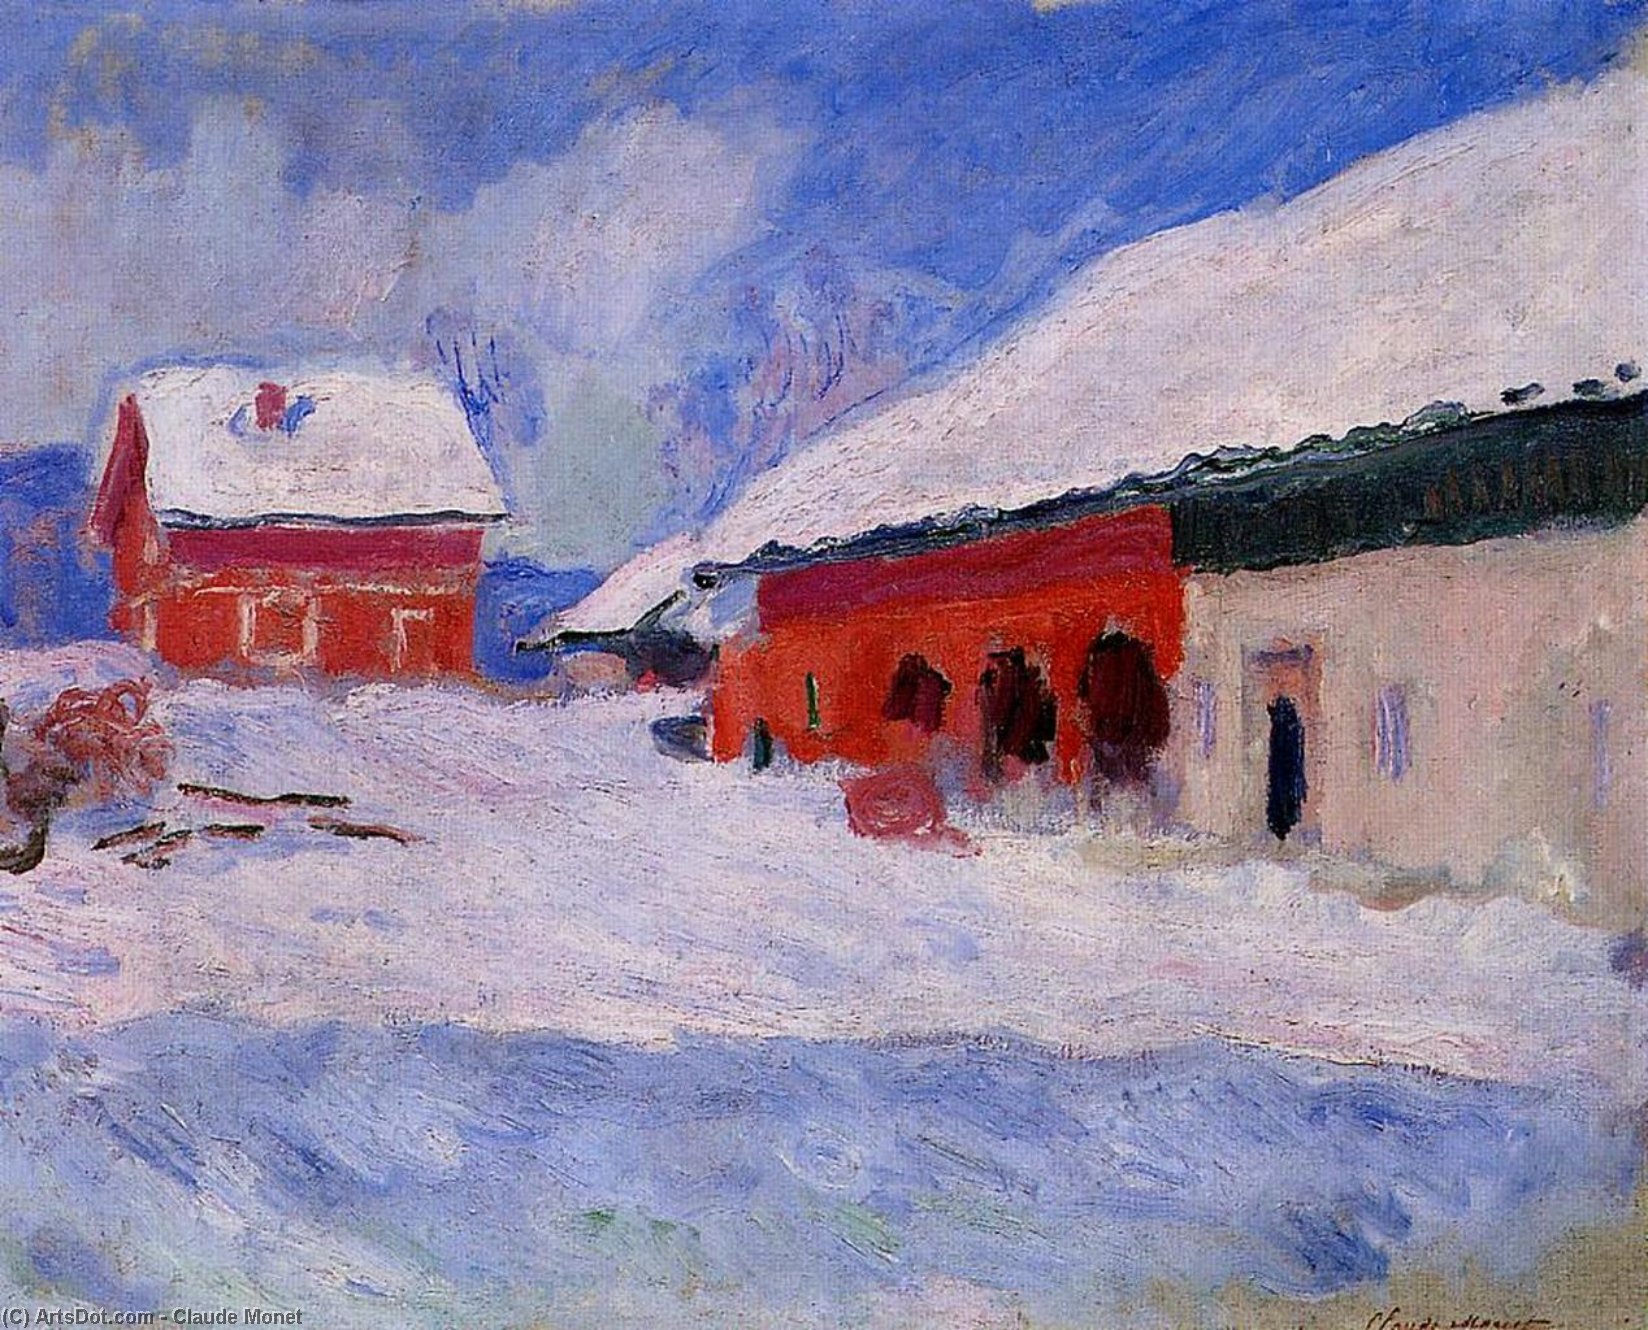 Получить Репродукции Картин Красные дома в Бьорнегаре в снегу, Норвегия, 1895 по Claude Monet (1840-1926, France) | ArtsDot.com